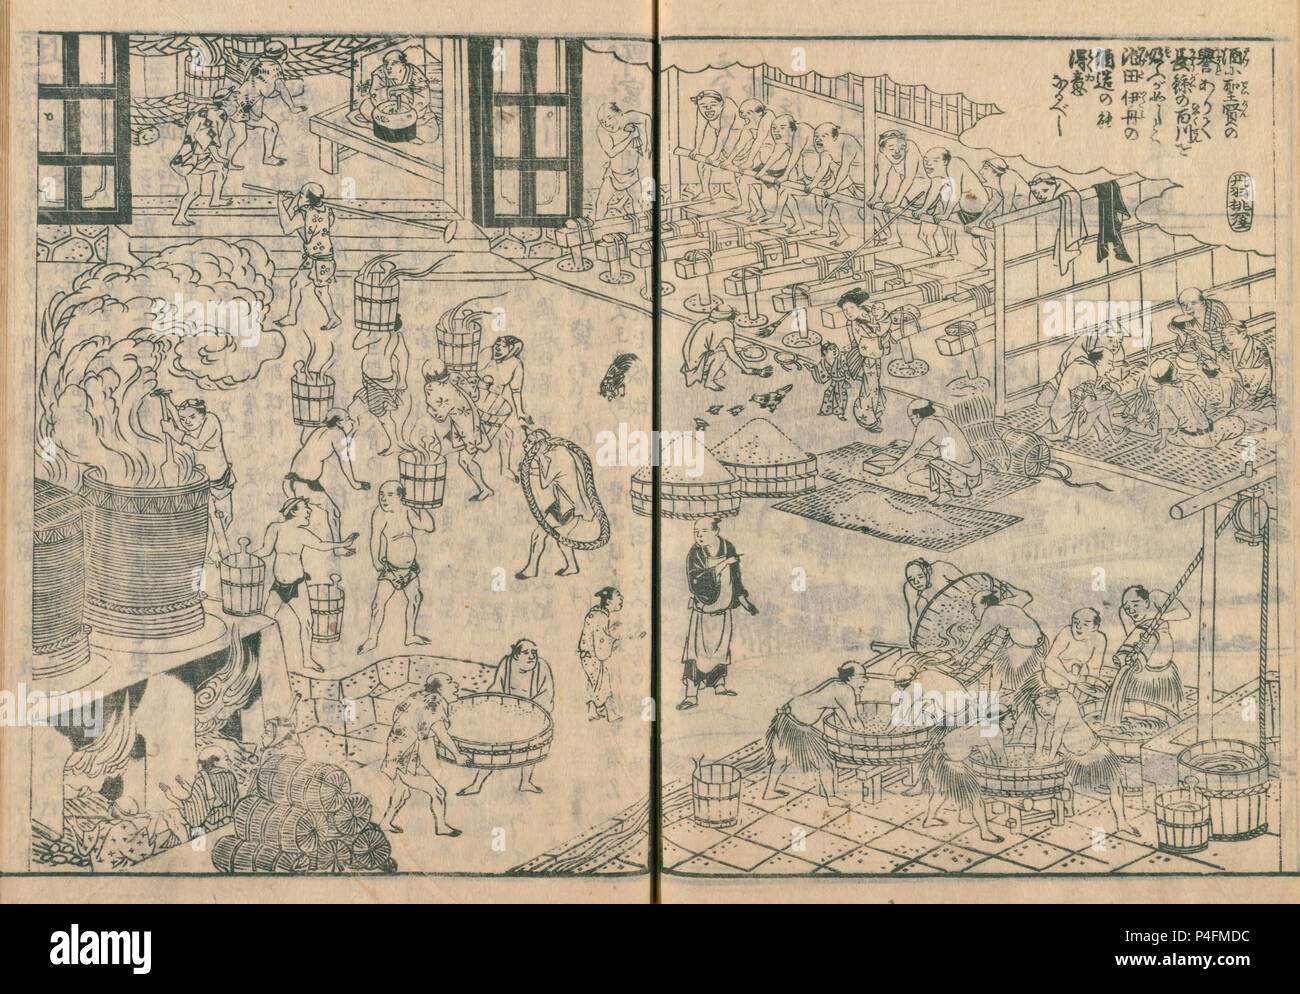 Sake-Produktion in Itami, aus Settsu meisho zue, veröffentlicht 1798 Stockfoto